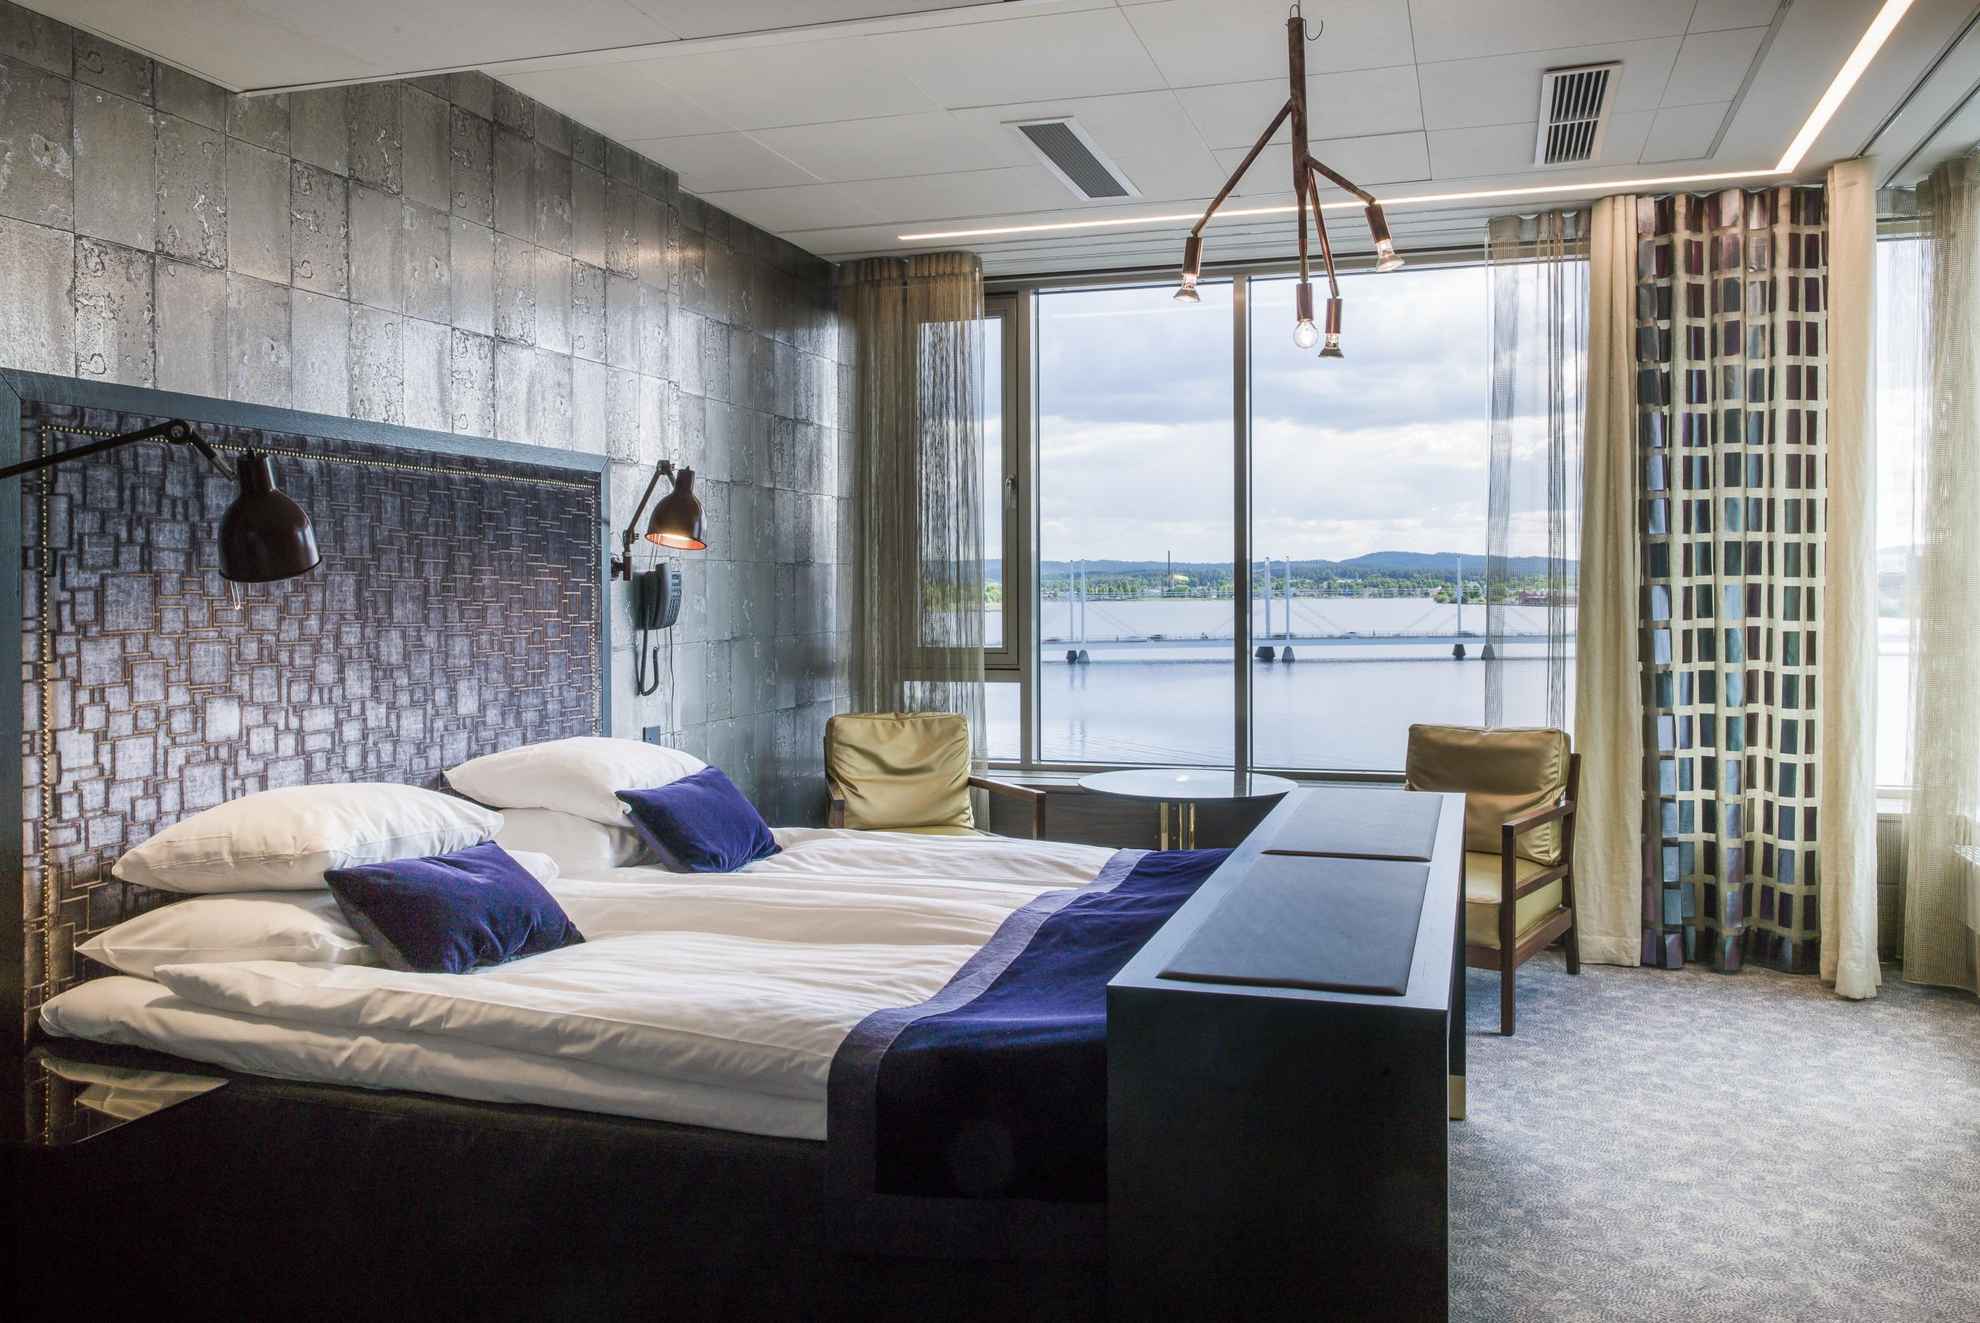 Une chambre d'hôtel avec vue sur un lac en été. La chambre possède un lit double, une petite table ronde et deux chaises.